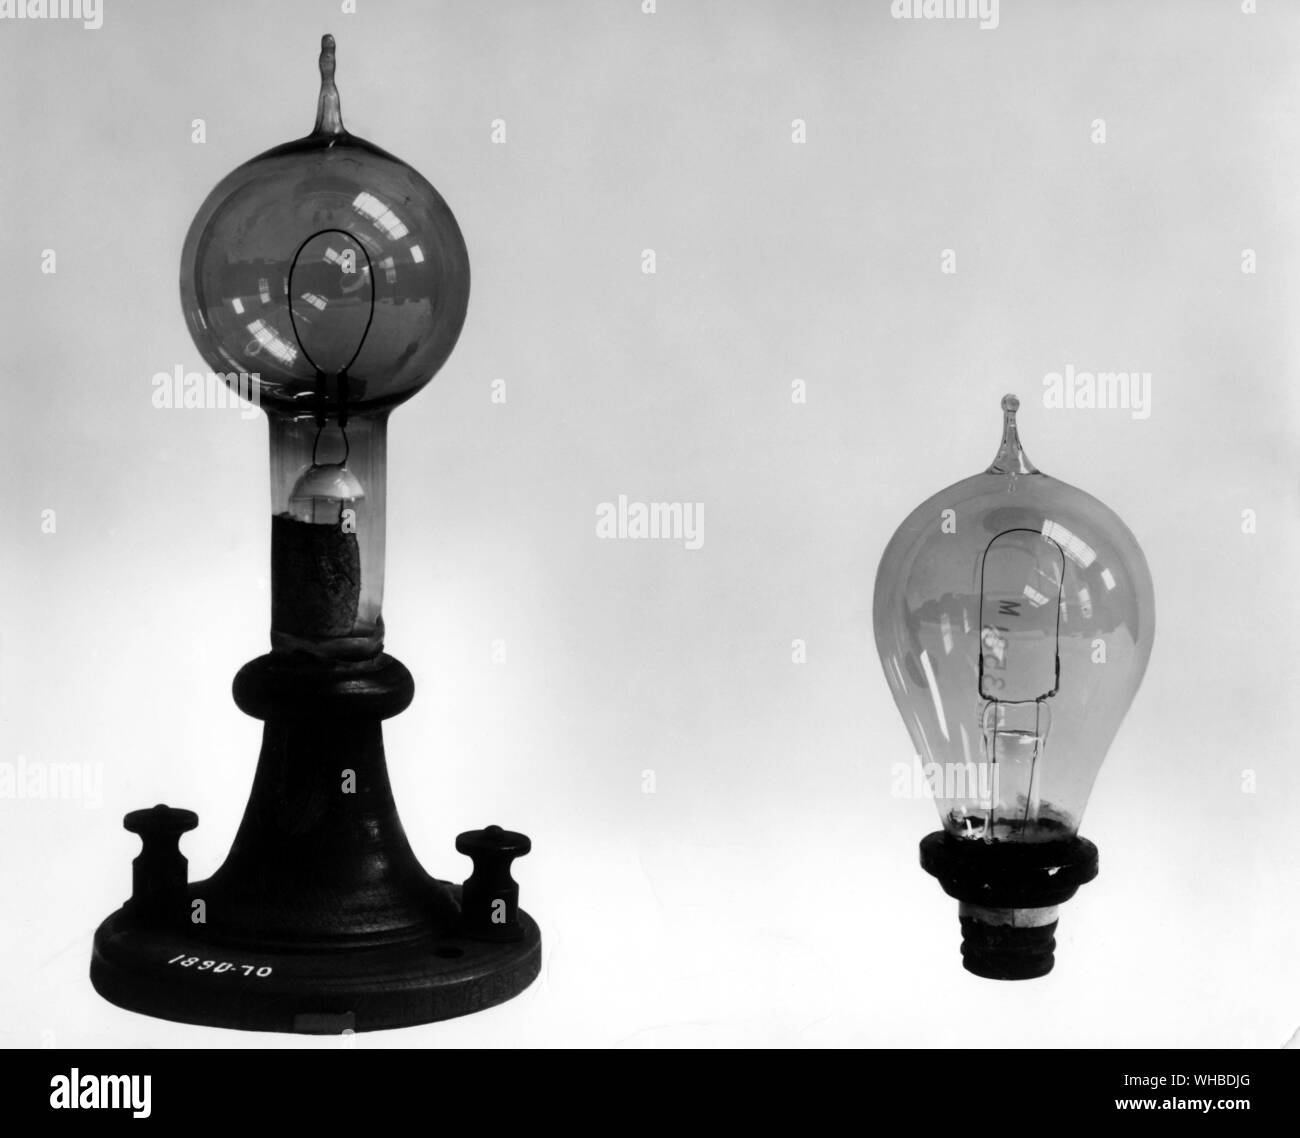 Swan experimentelle carbon Druckbleistift Lampe 1878-9 - zwei frühe kommerzielle Lampentypen c 1880 - durch den englischen Chemiker, Joseph Swan (1827-1914). Diese Lampe ist eine frühe Kohlenstoff und Stange Glühlampe Glühlampe elektrische Lampe. . Stockfoto